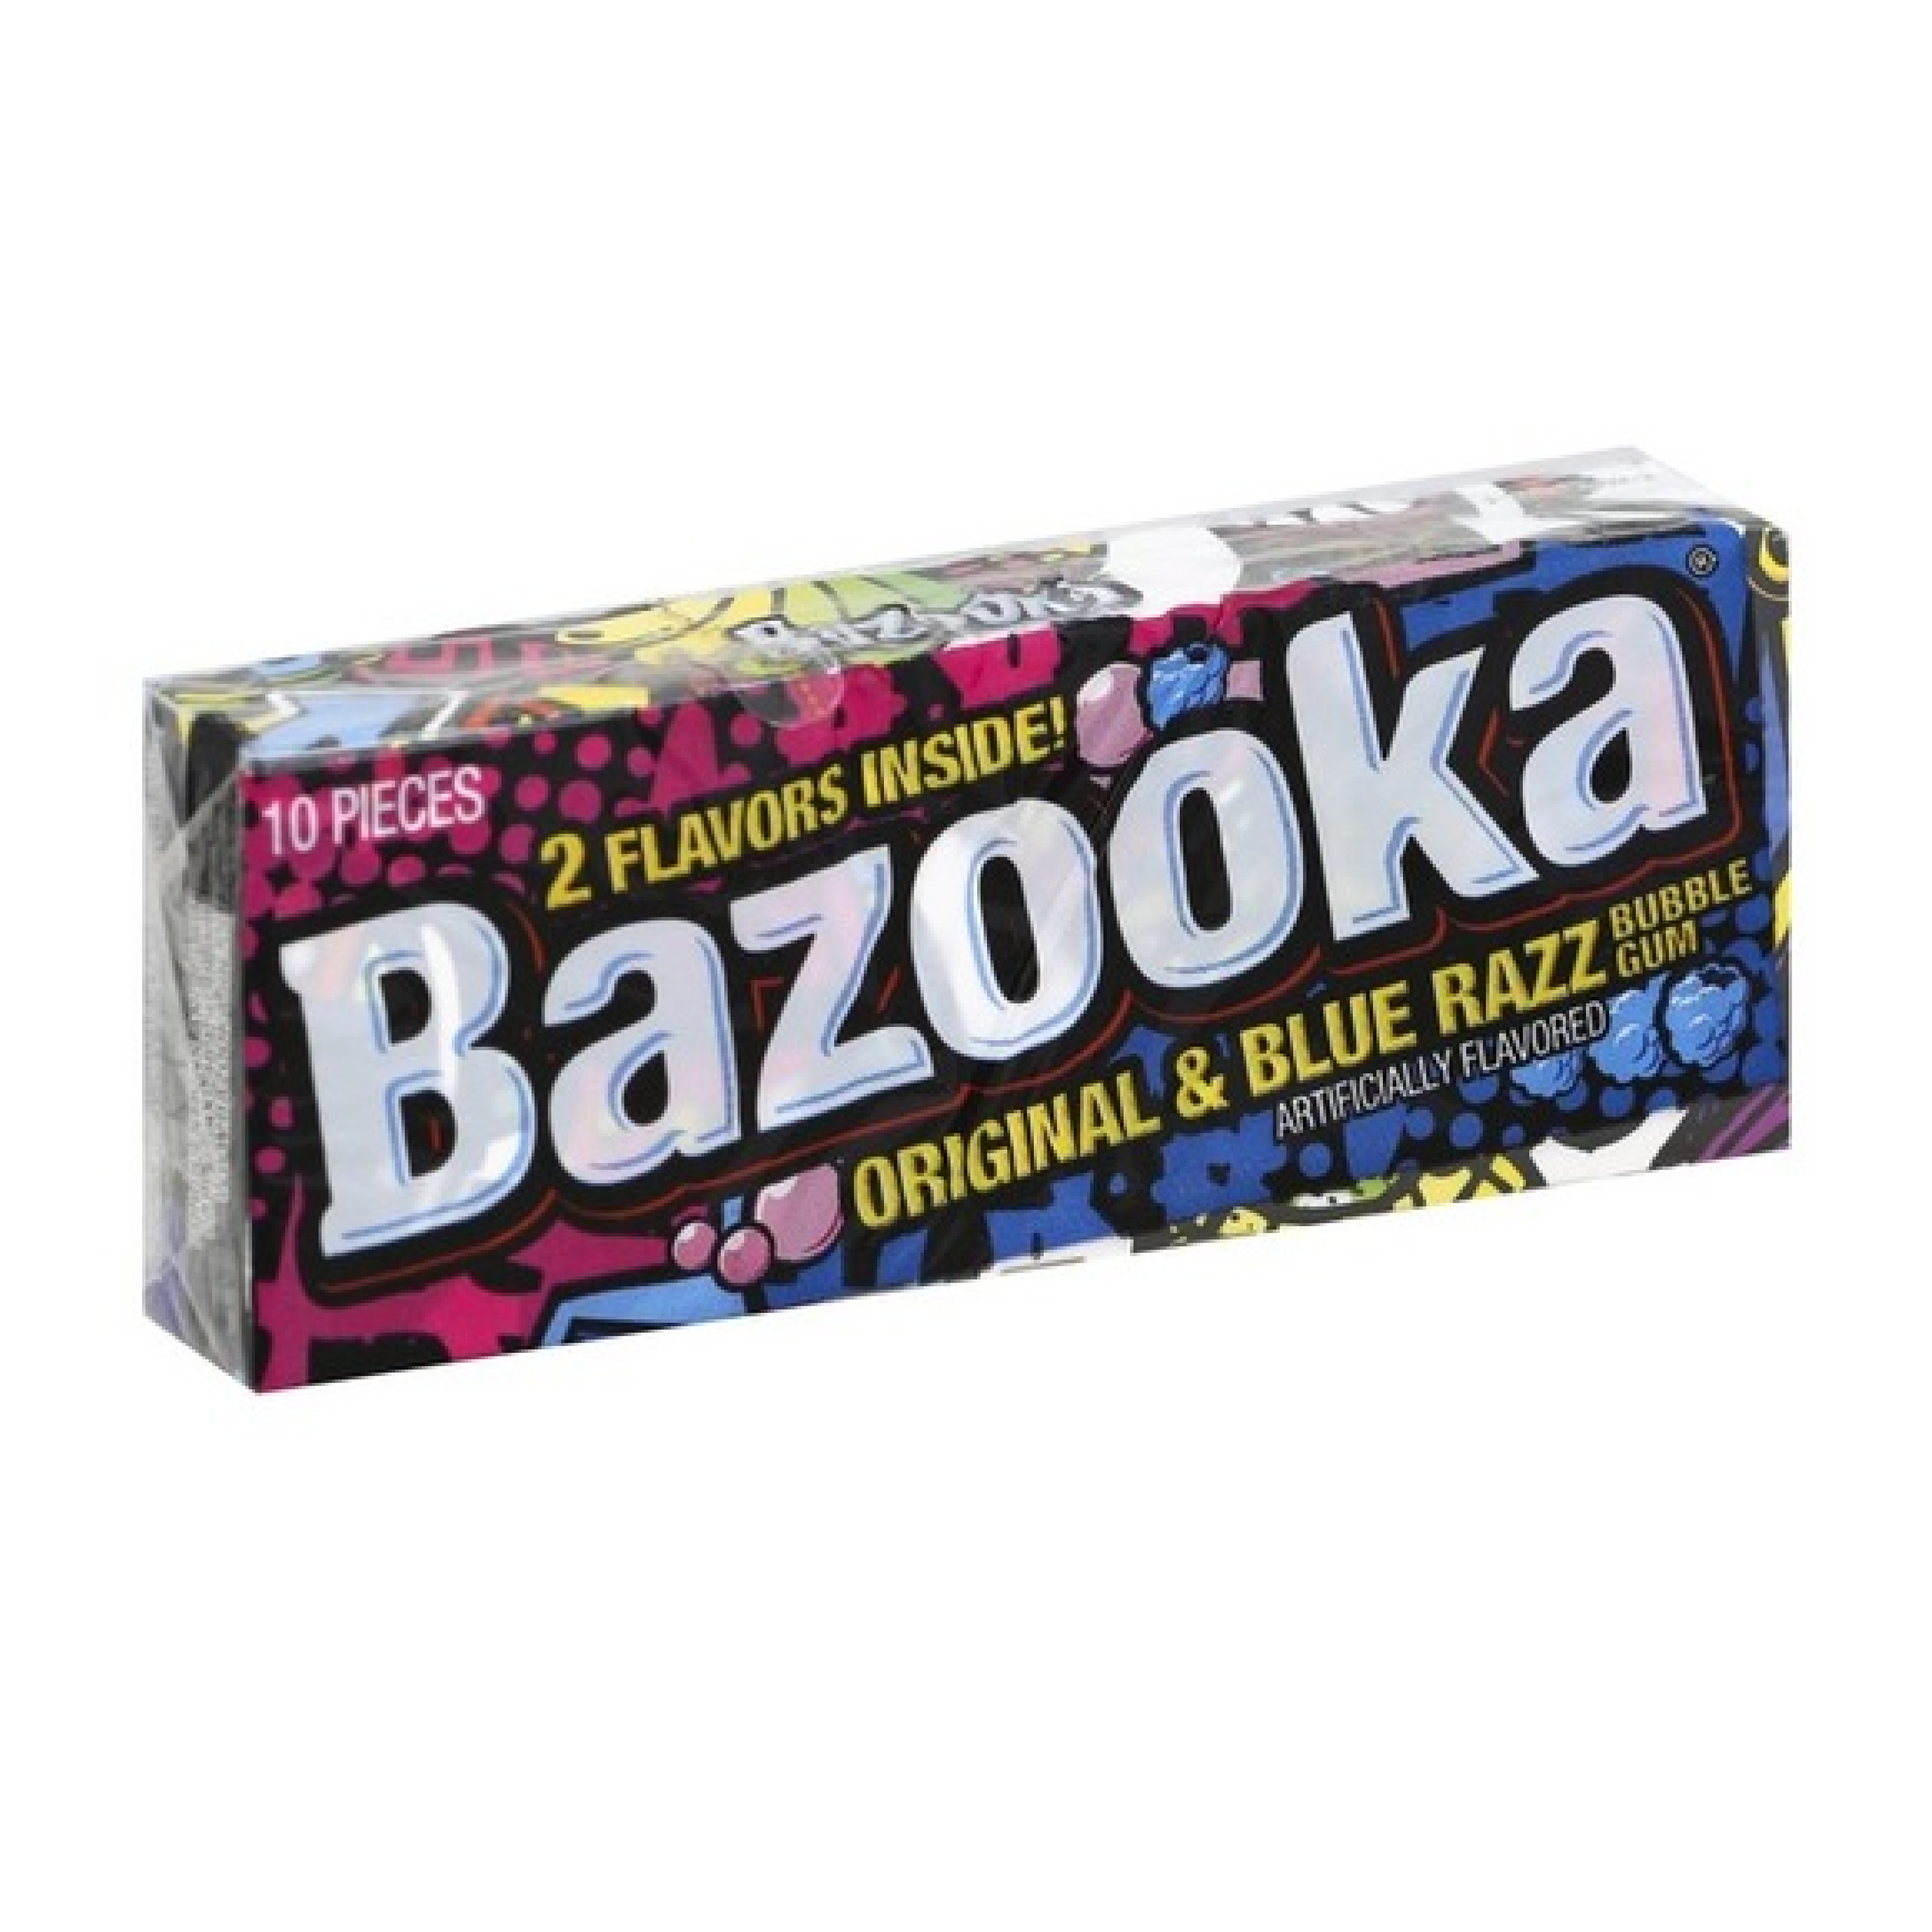 Bazooka Original & Blue Razz